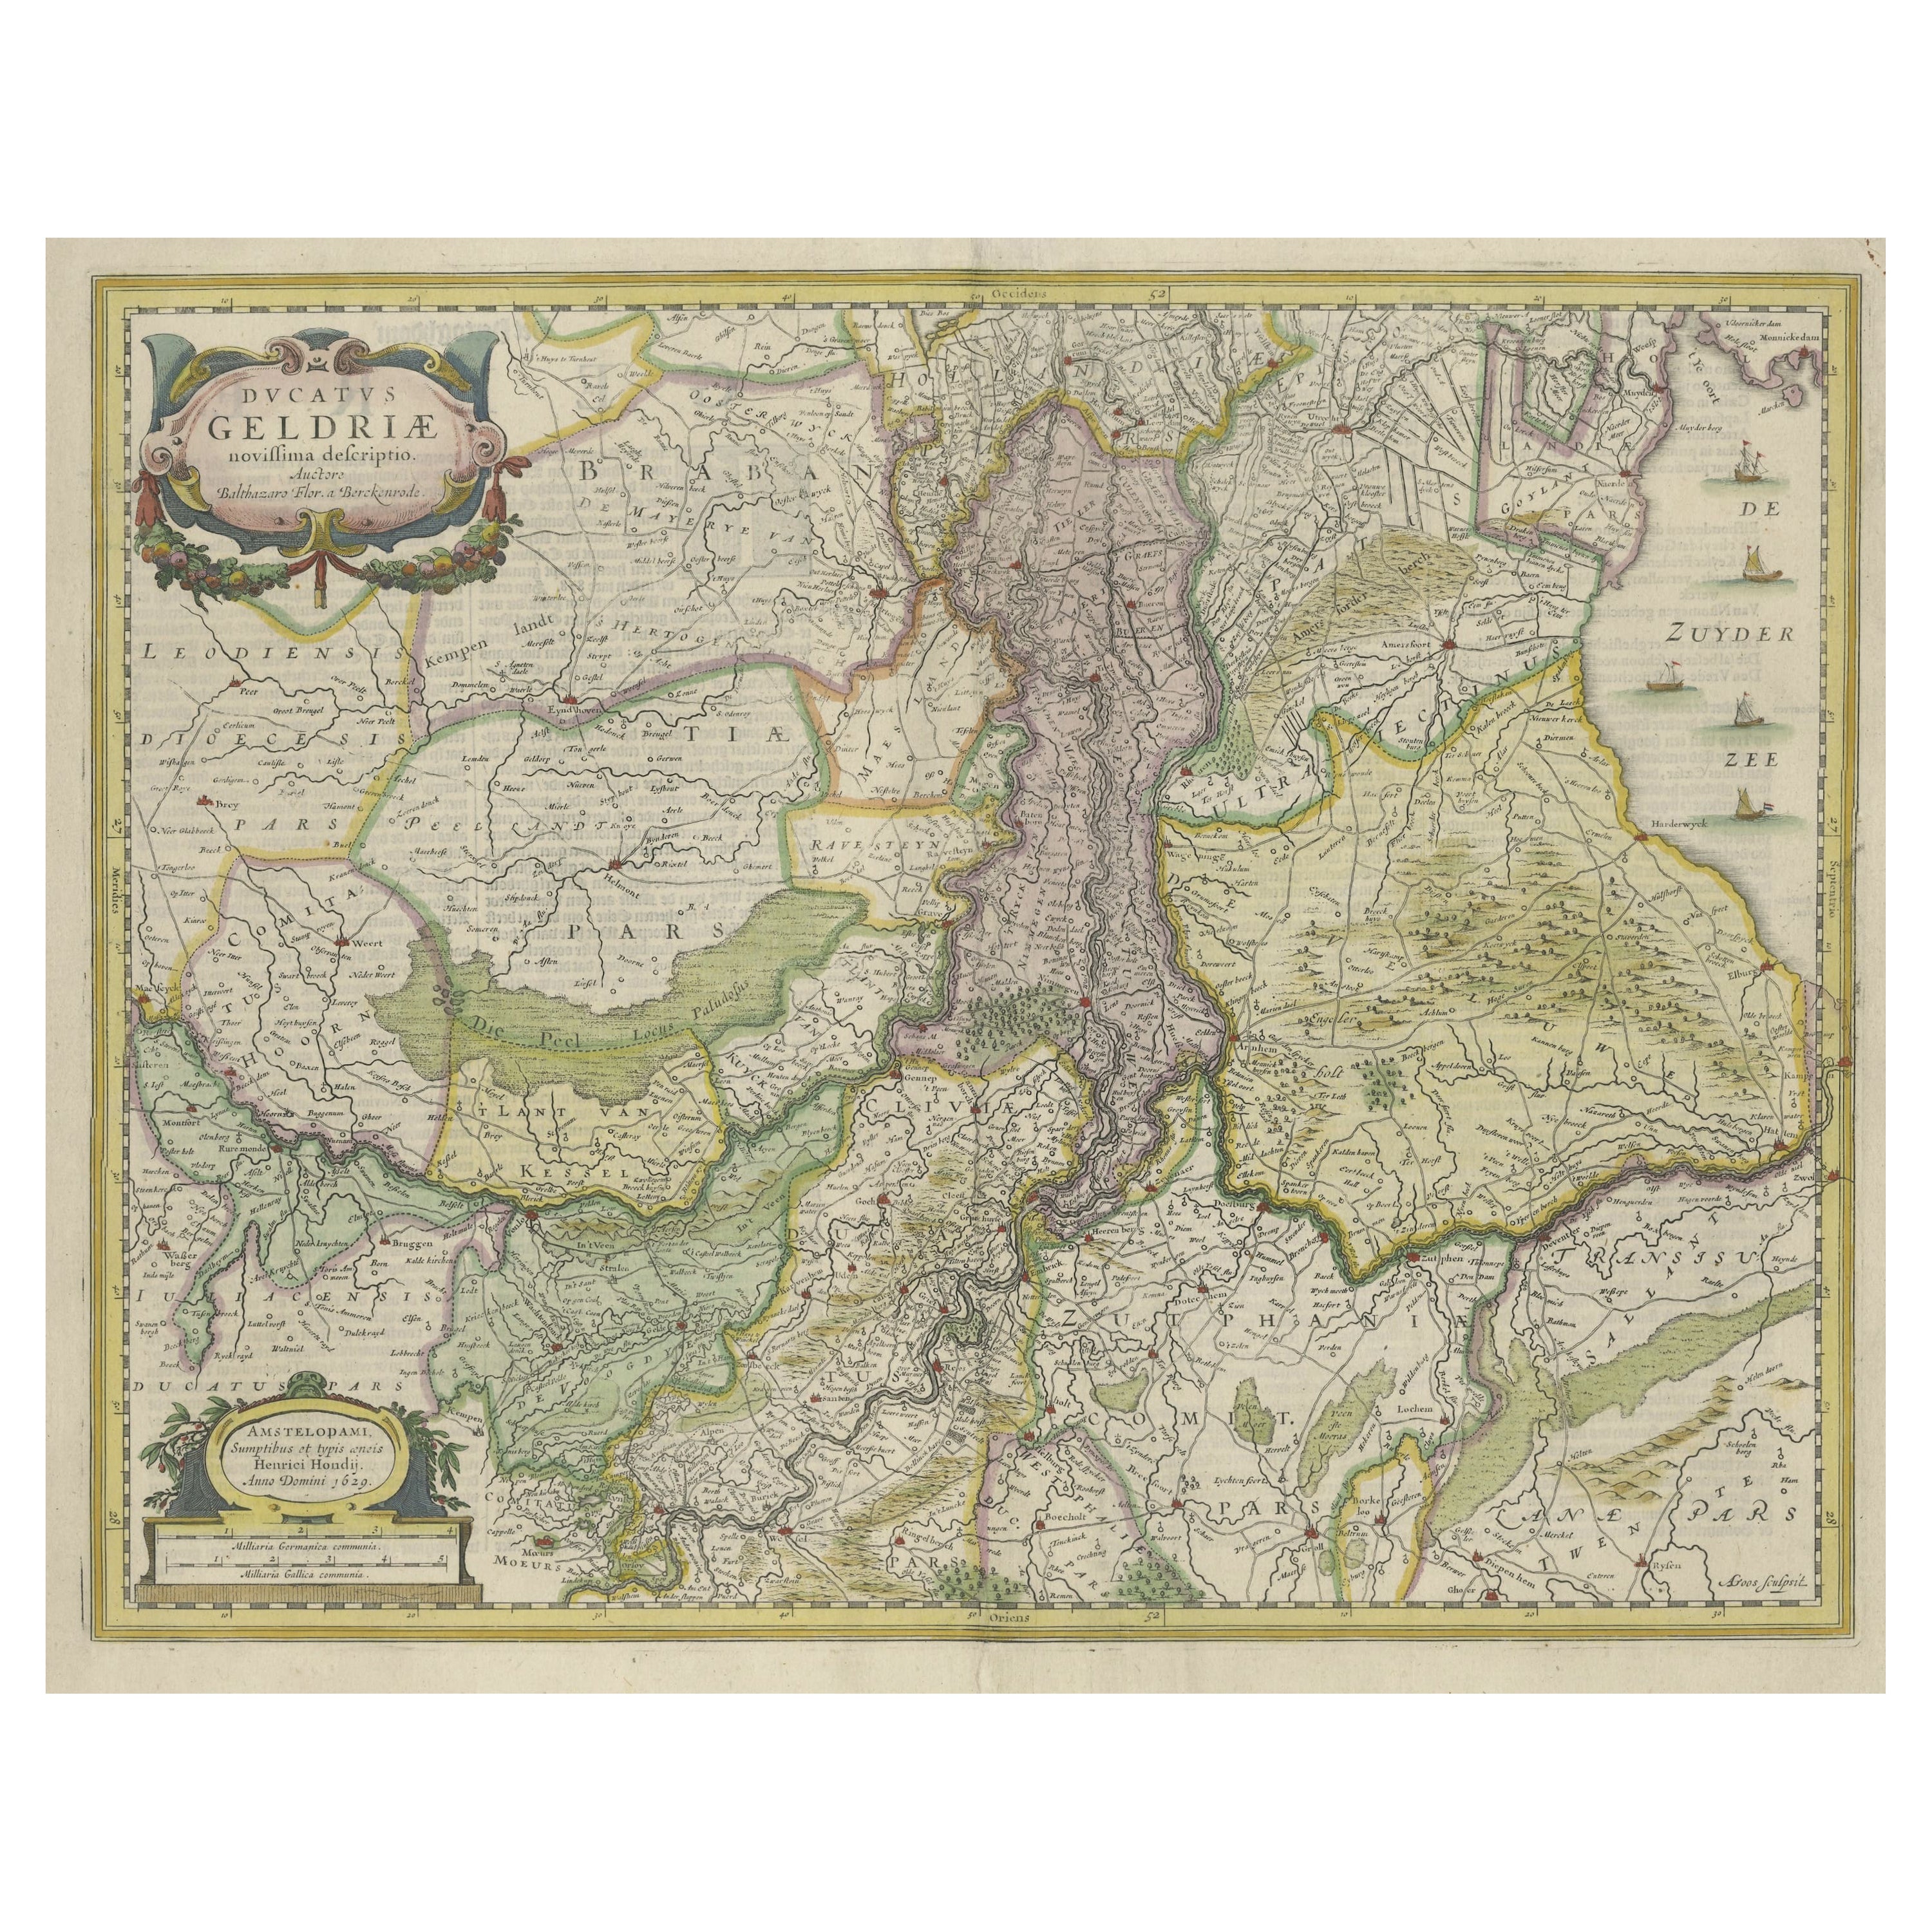 Originale handkolorierte antike Karte von Gelderland und Utrecht in den Niederlanden